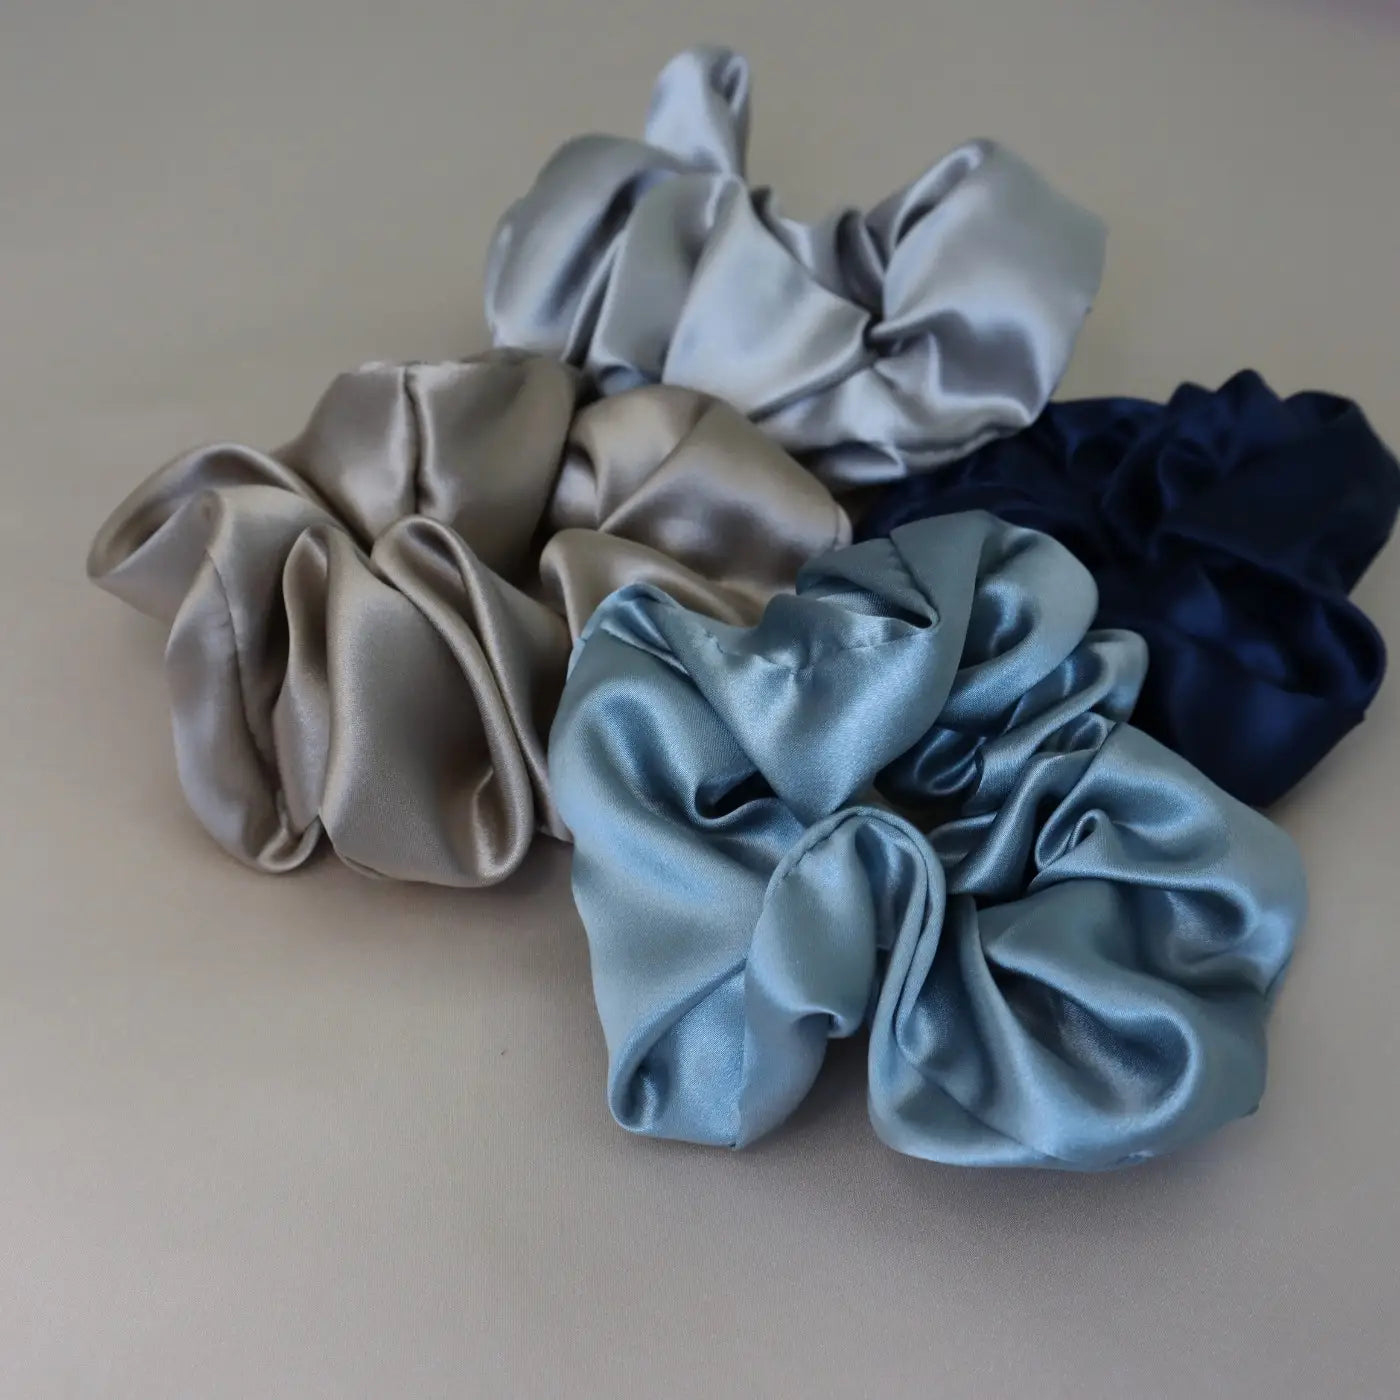 4 Silk Hair Scrunchie Hair Tie Set - Navy, Silver, Brown, Light Blue